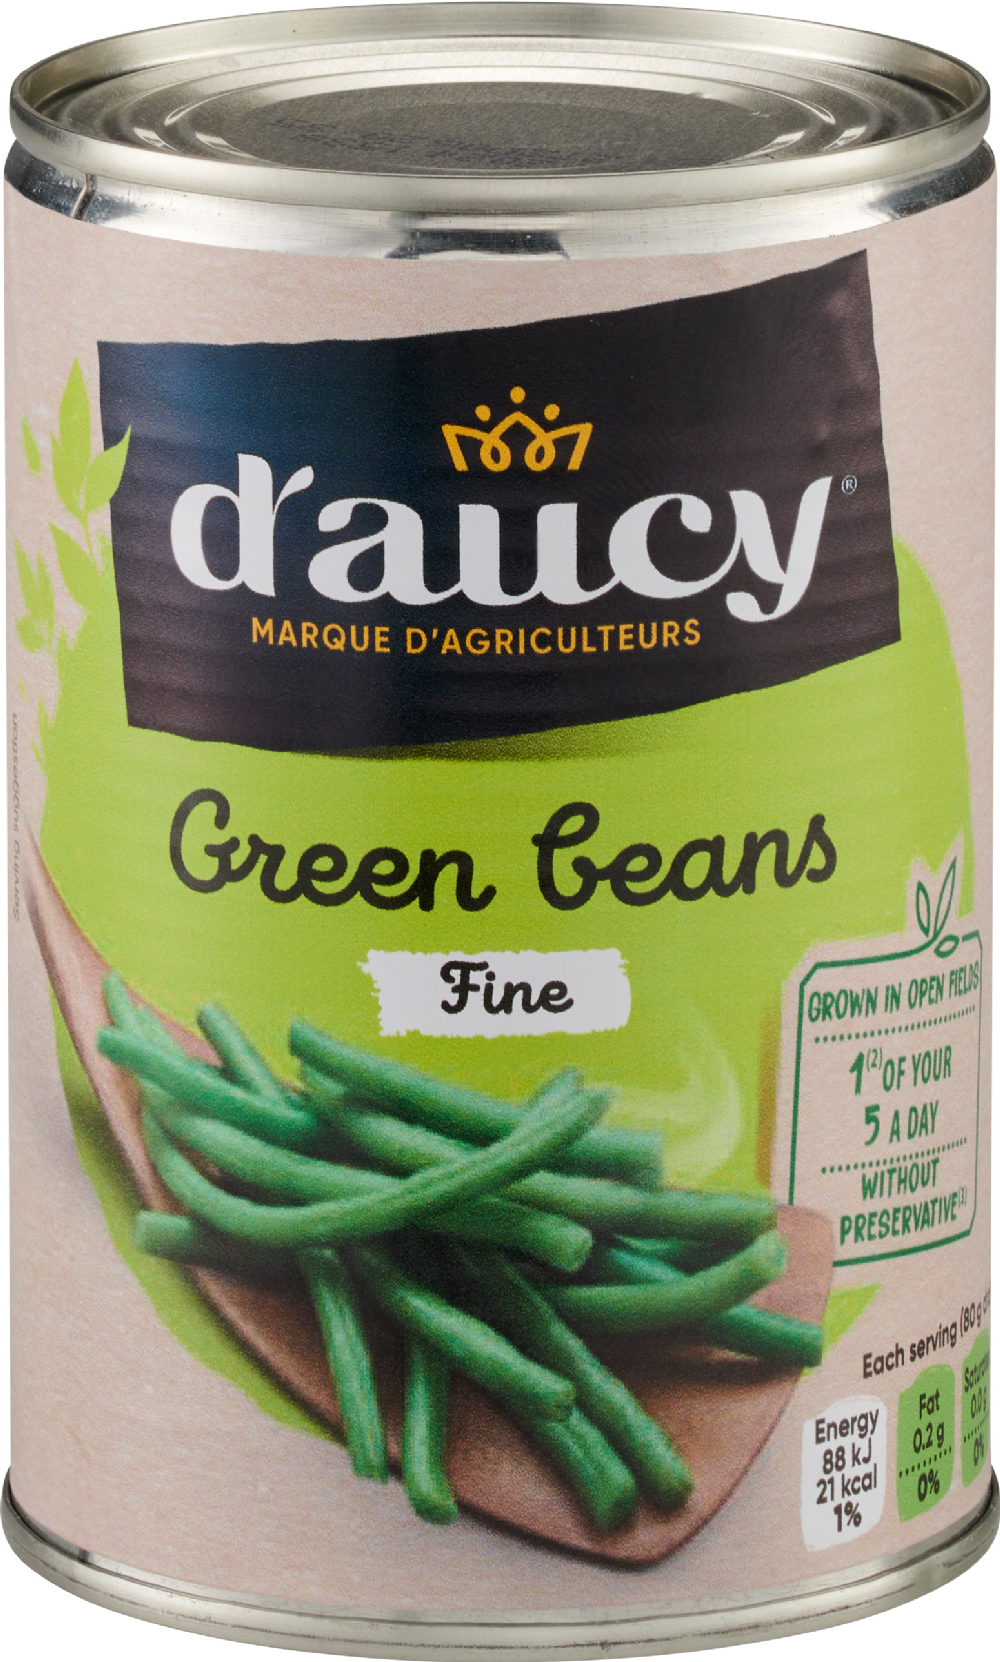 D'AUCY Green Beans - Fine 400g